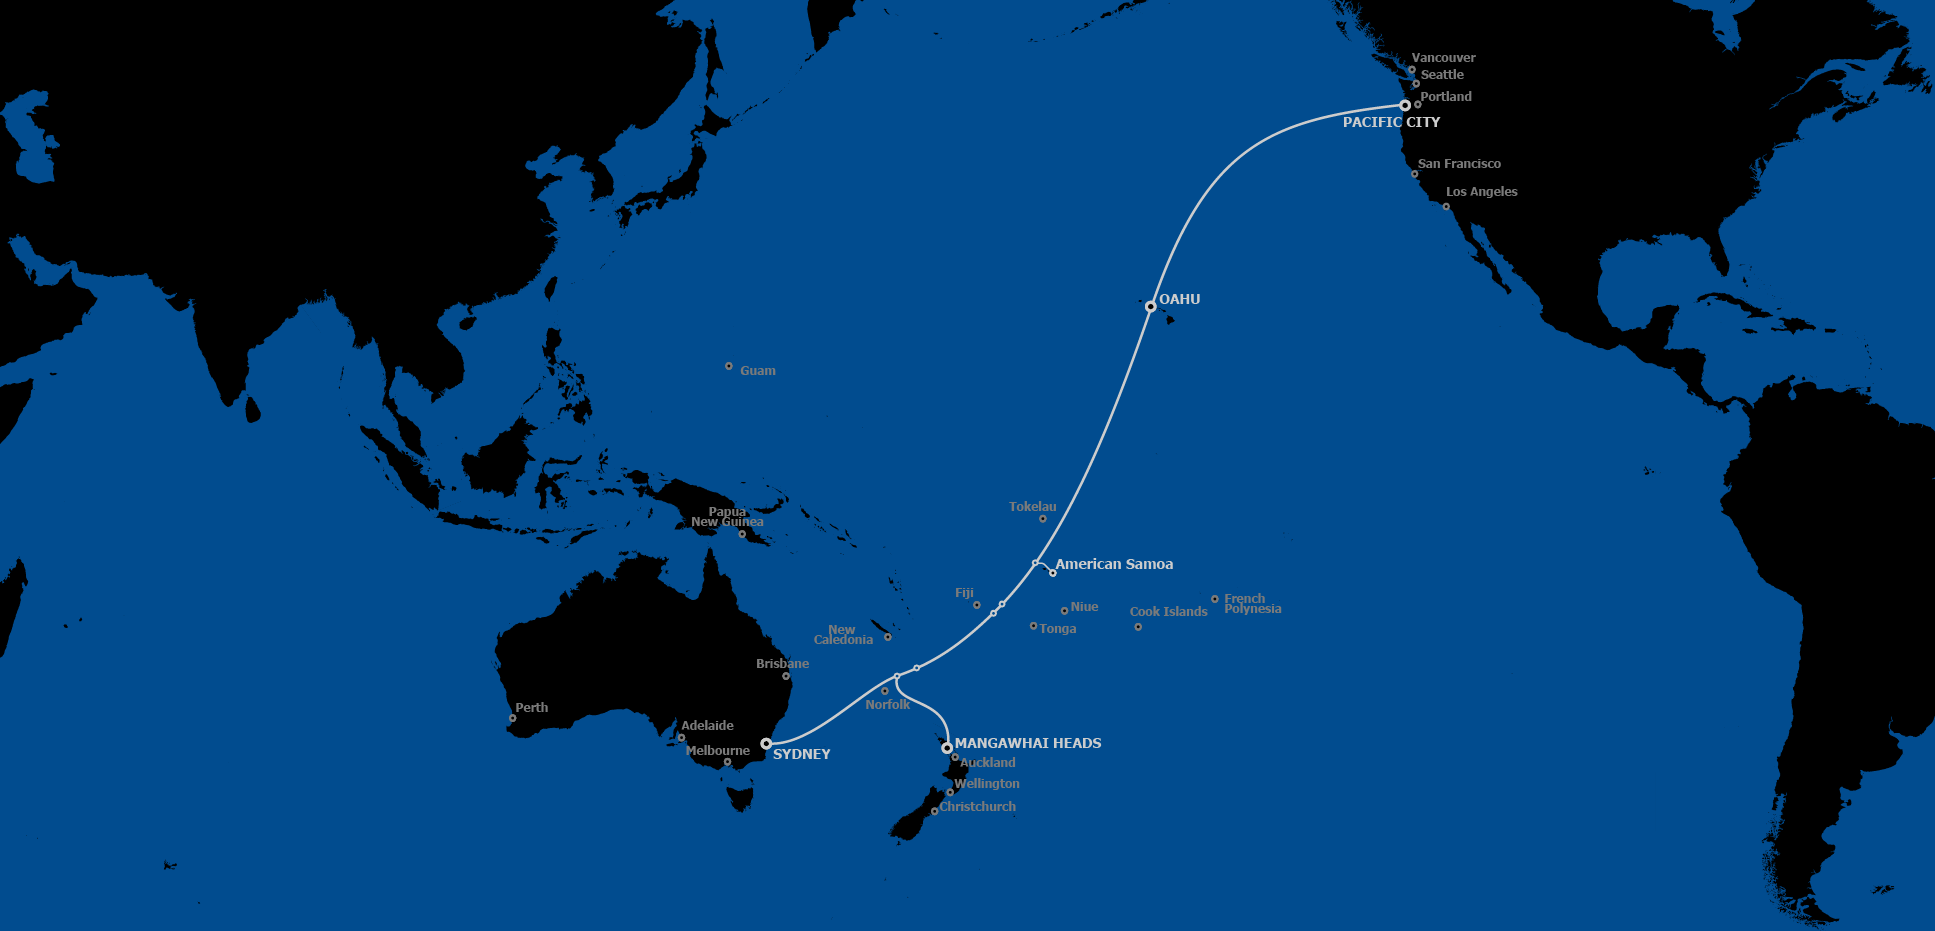 Le projet privé Hawaiki reliera l'Australie/Nouvelle-Zélande aux États-Unis en passant par les Samoa américaines et Hawaii. Un autre projet, public cette fois, devrait relier les Samoa à Tahiti en passant par les Cook, Niue et Tokelau.